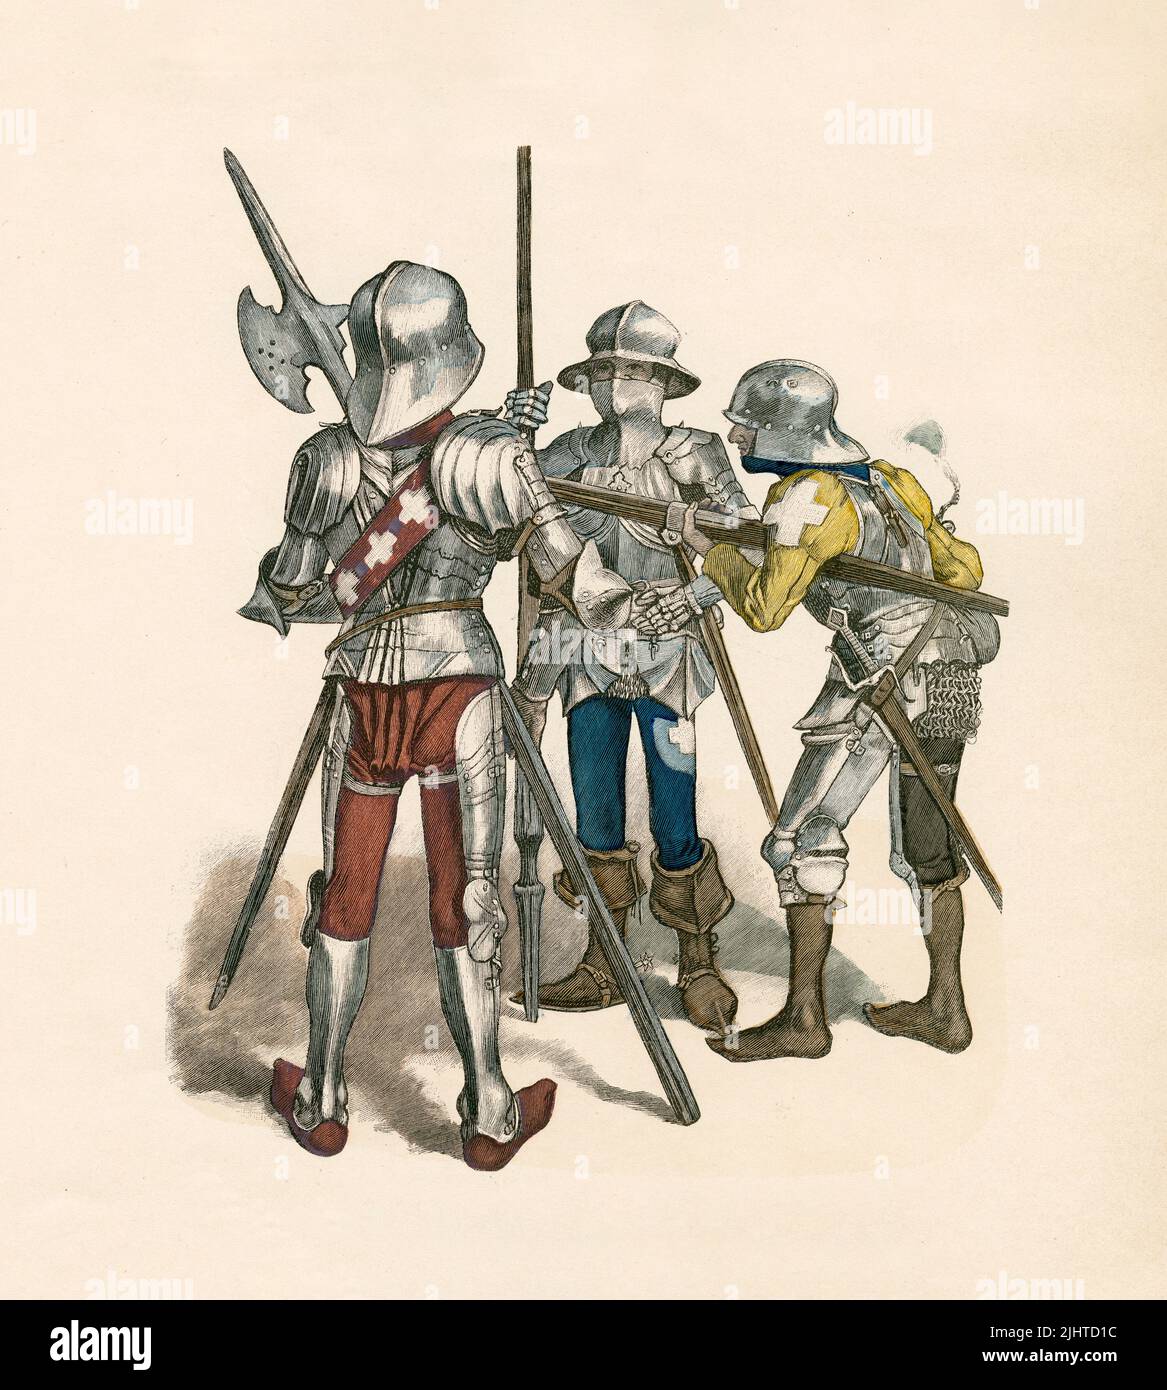 Sergent, Soldat monté, Rifleman, Costume militaire suisse, 15th siècle, Illustration, The History of Costume, Braun & Schneider, Munich, Allemagne, 1861-1880 Banque D'Images